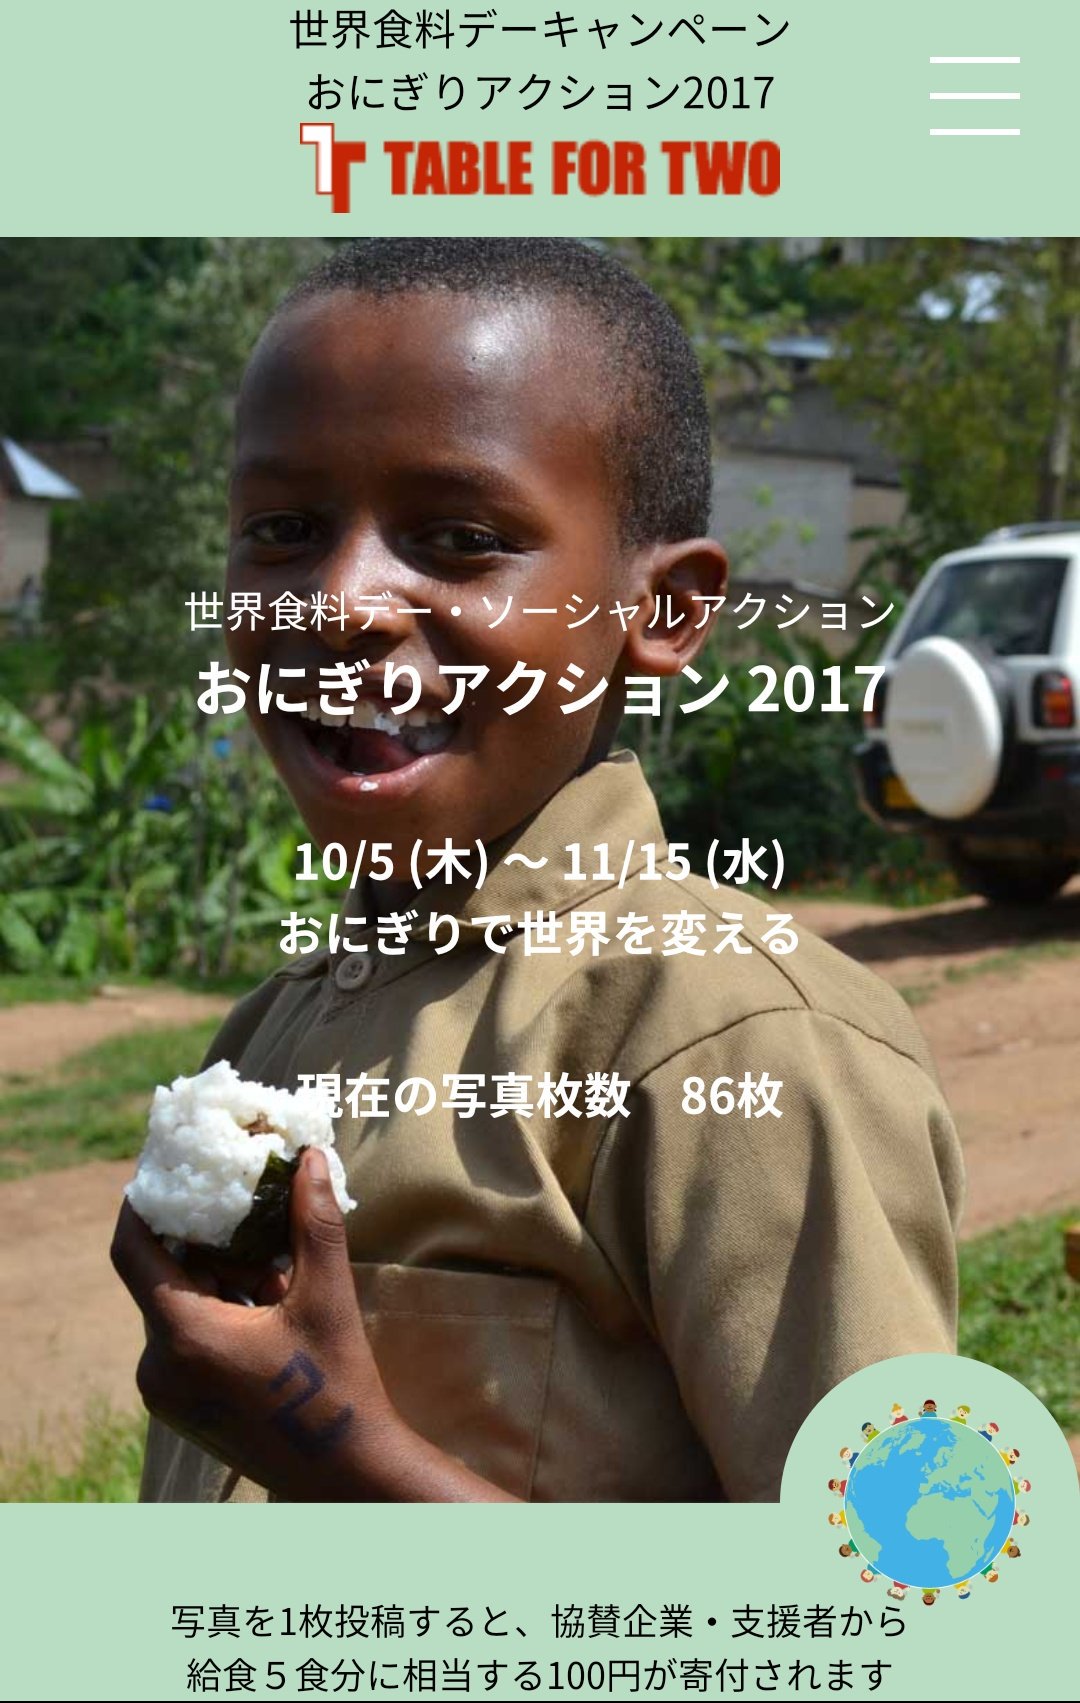 Keiko 余ったお肉で肉巻きおにぎり 毎日当たり前のようにご飯を食べてるけど 世界中には食べれない子がたくさん おにぎりの投稿でご飯が食べれない アフリカの子供たちに給食が届きます それなら私も たくさん届くとｲｲﾅ おにぎりアクション17